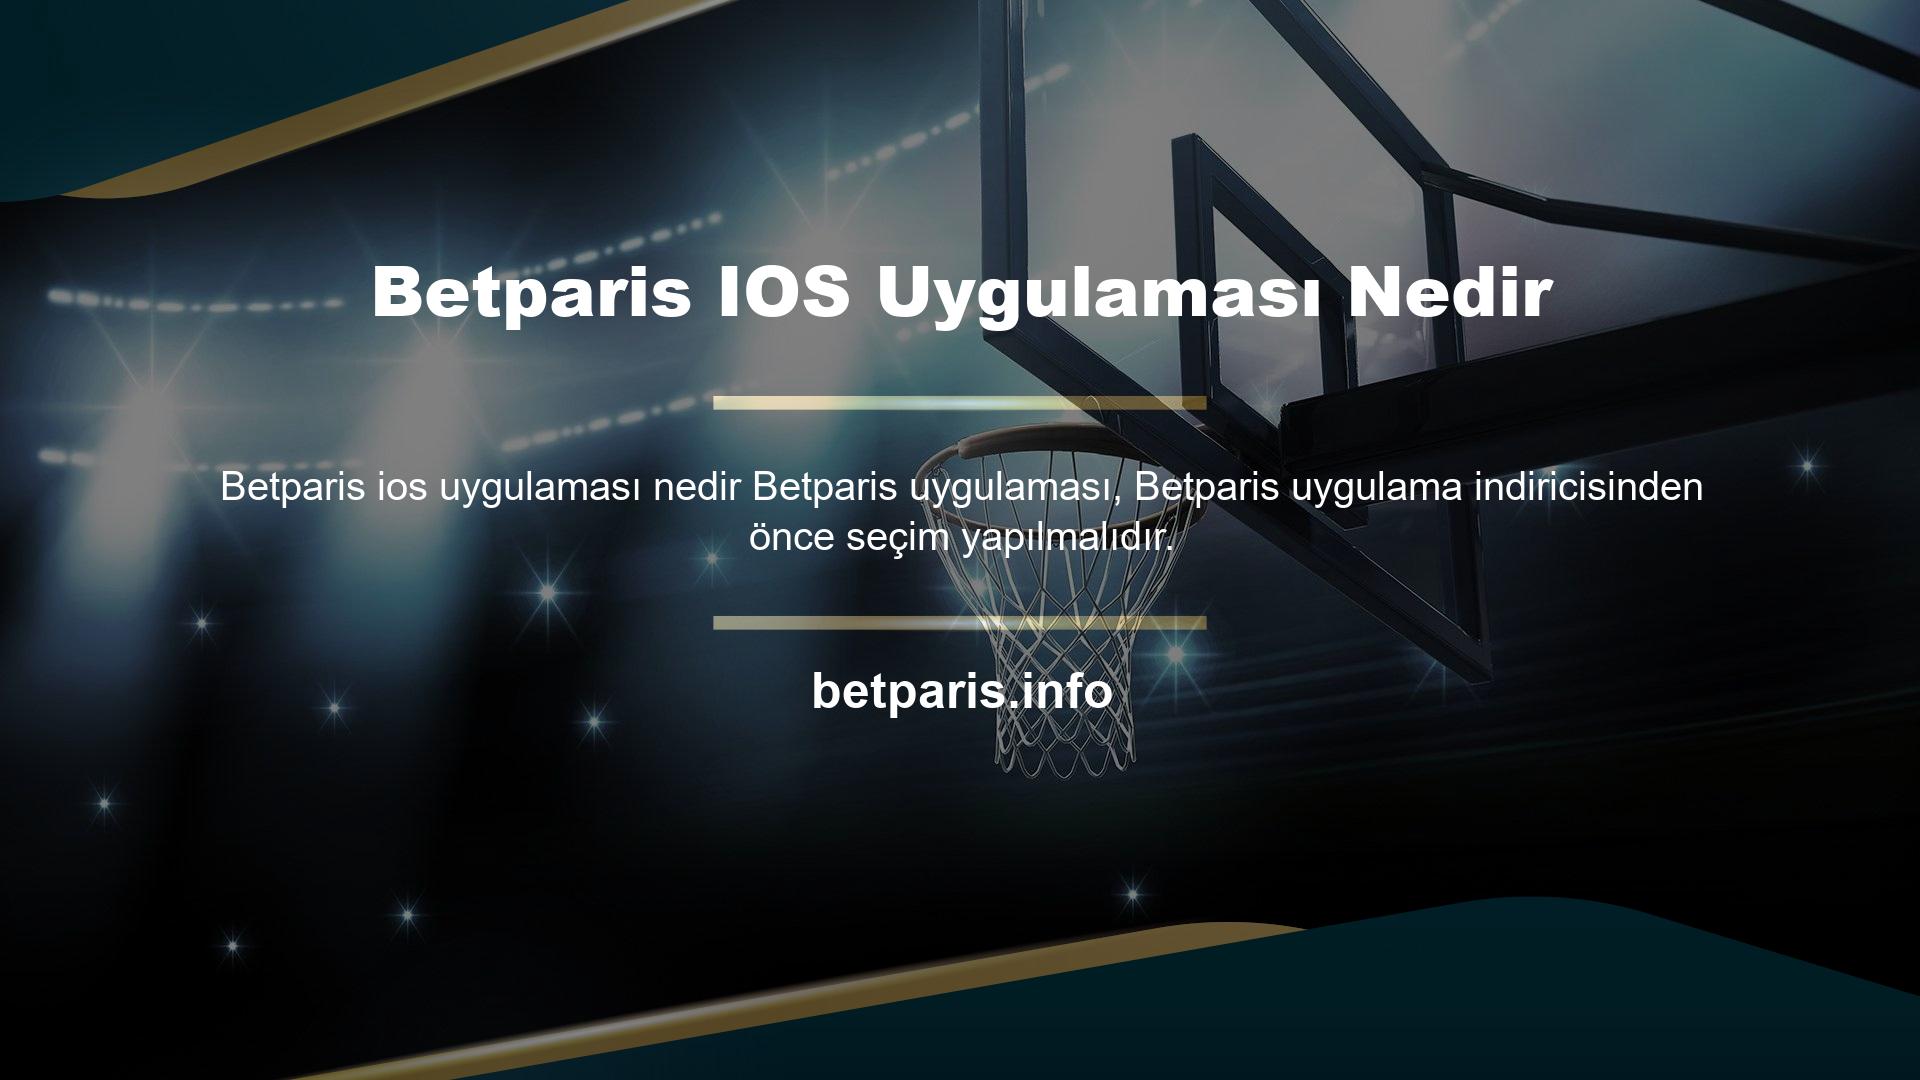 Betparis, IOS uygulaması olan bir masaüstü bilgisayardır